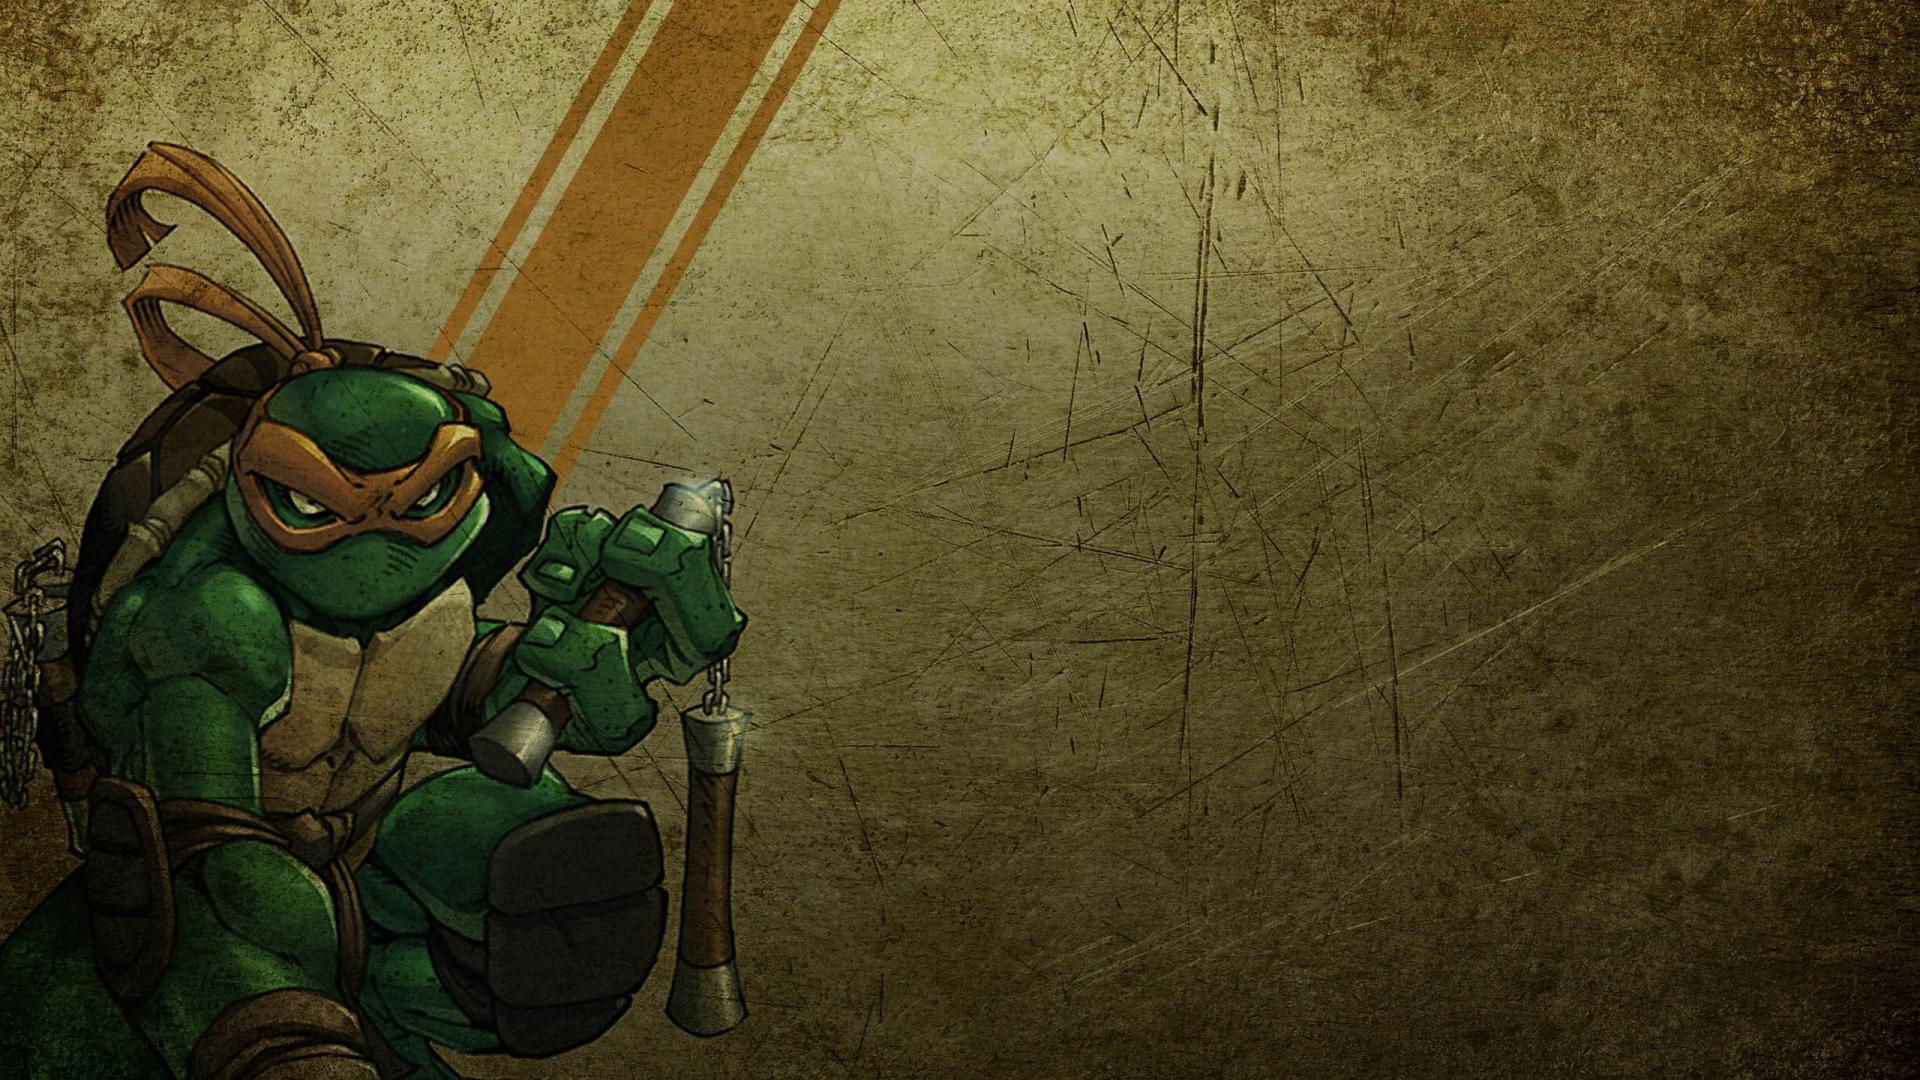 download wallpaper: Michelangelo (teenage mutant ninja turtles) wallpaper